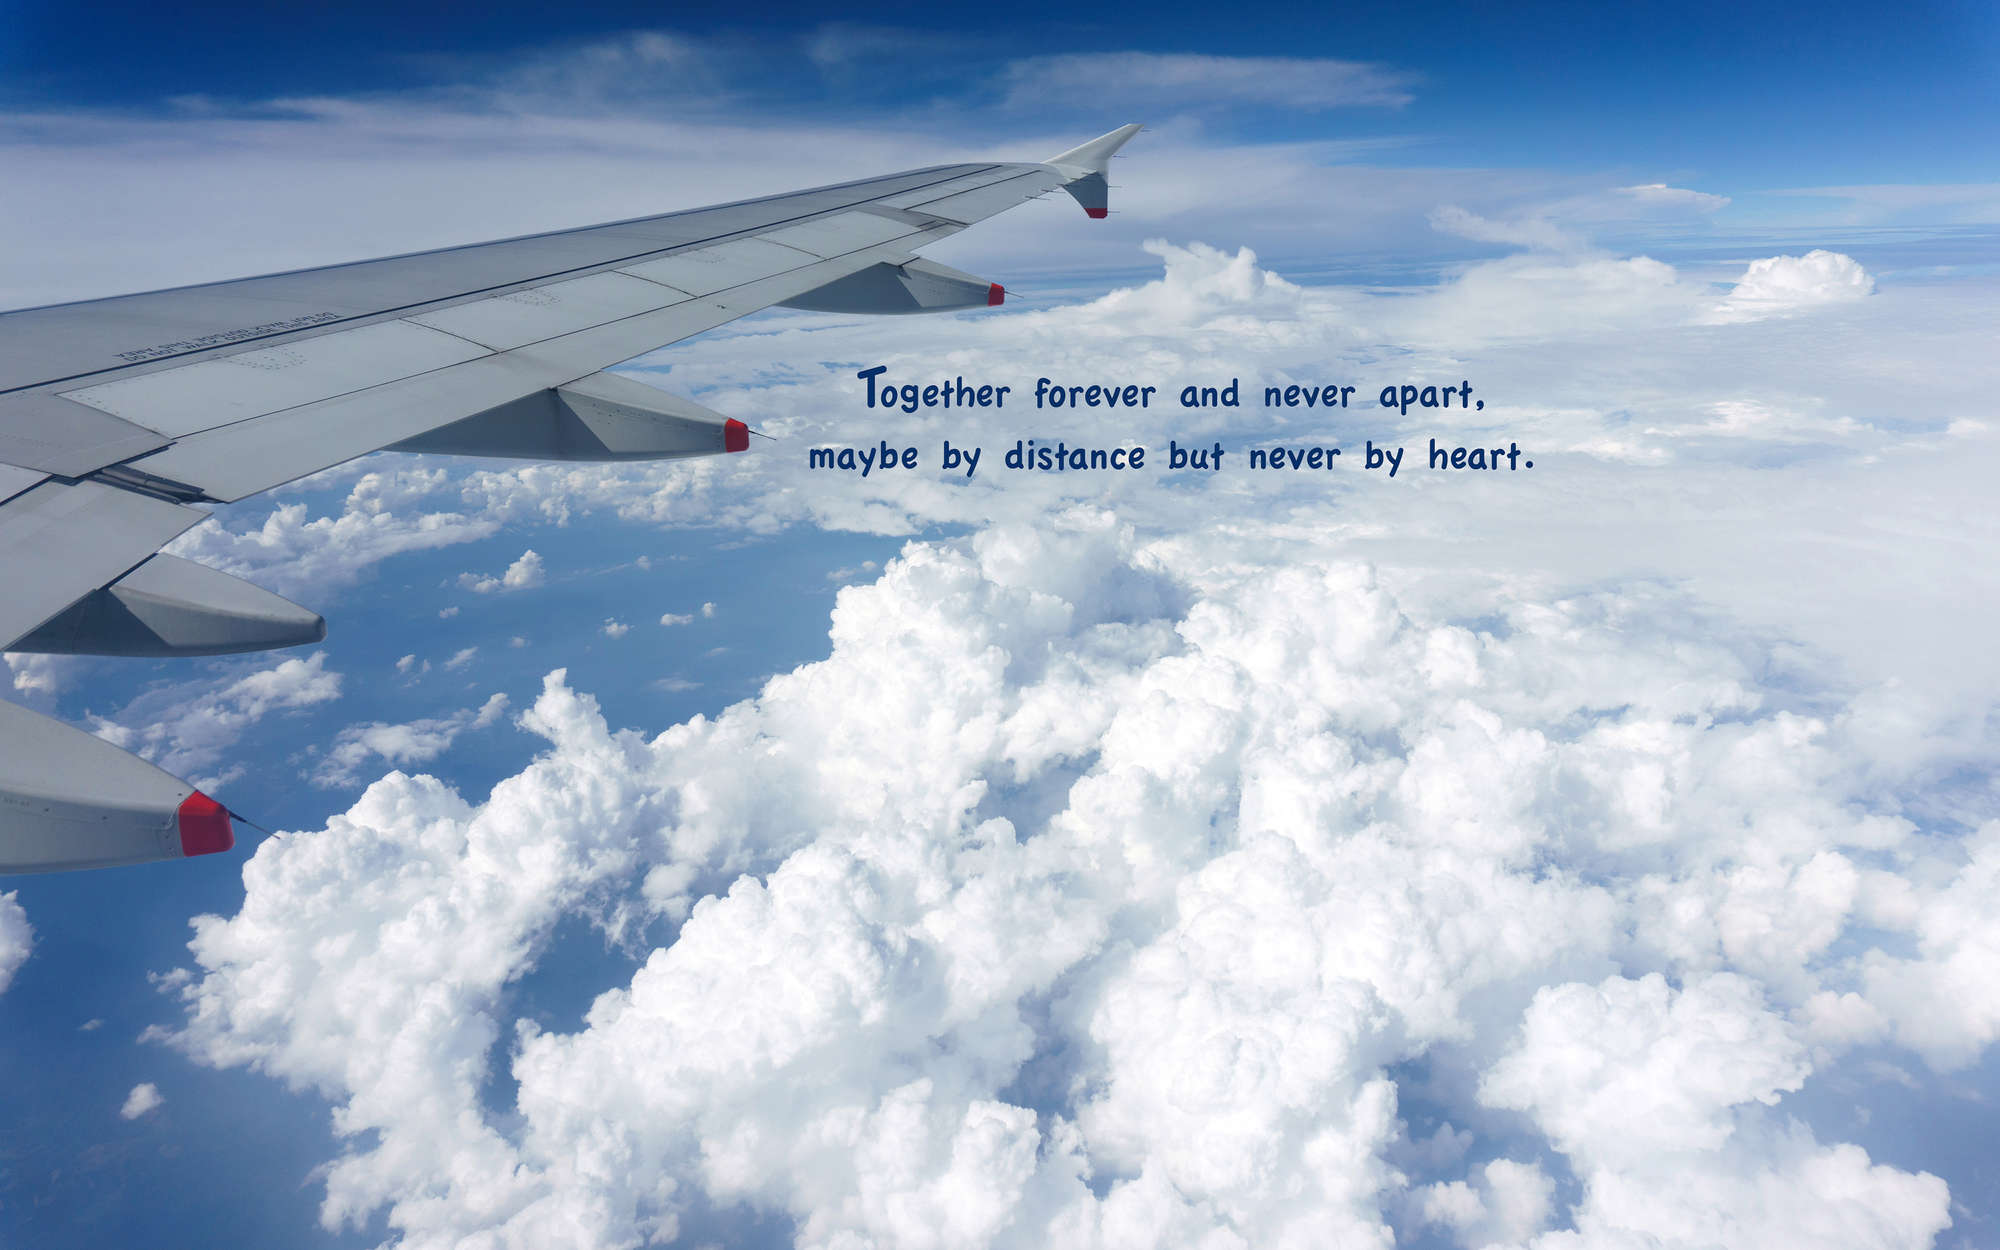             Fotomural Avión sobre las nubes con letras - Forro polar liso de alta calidad
        